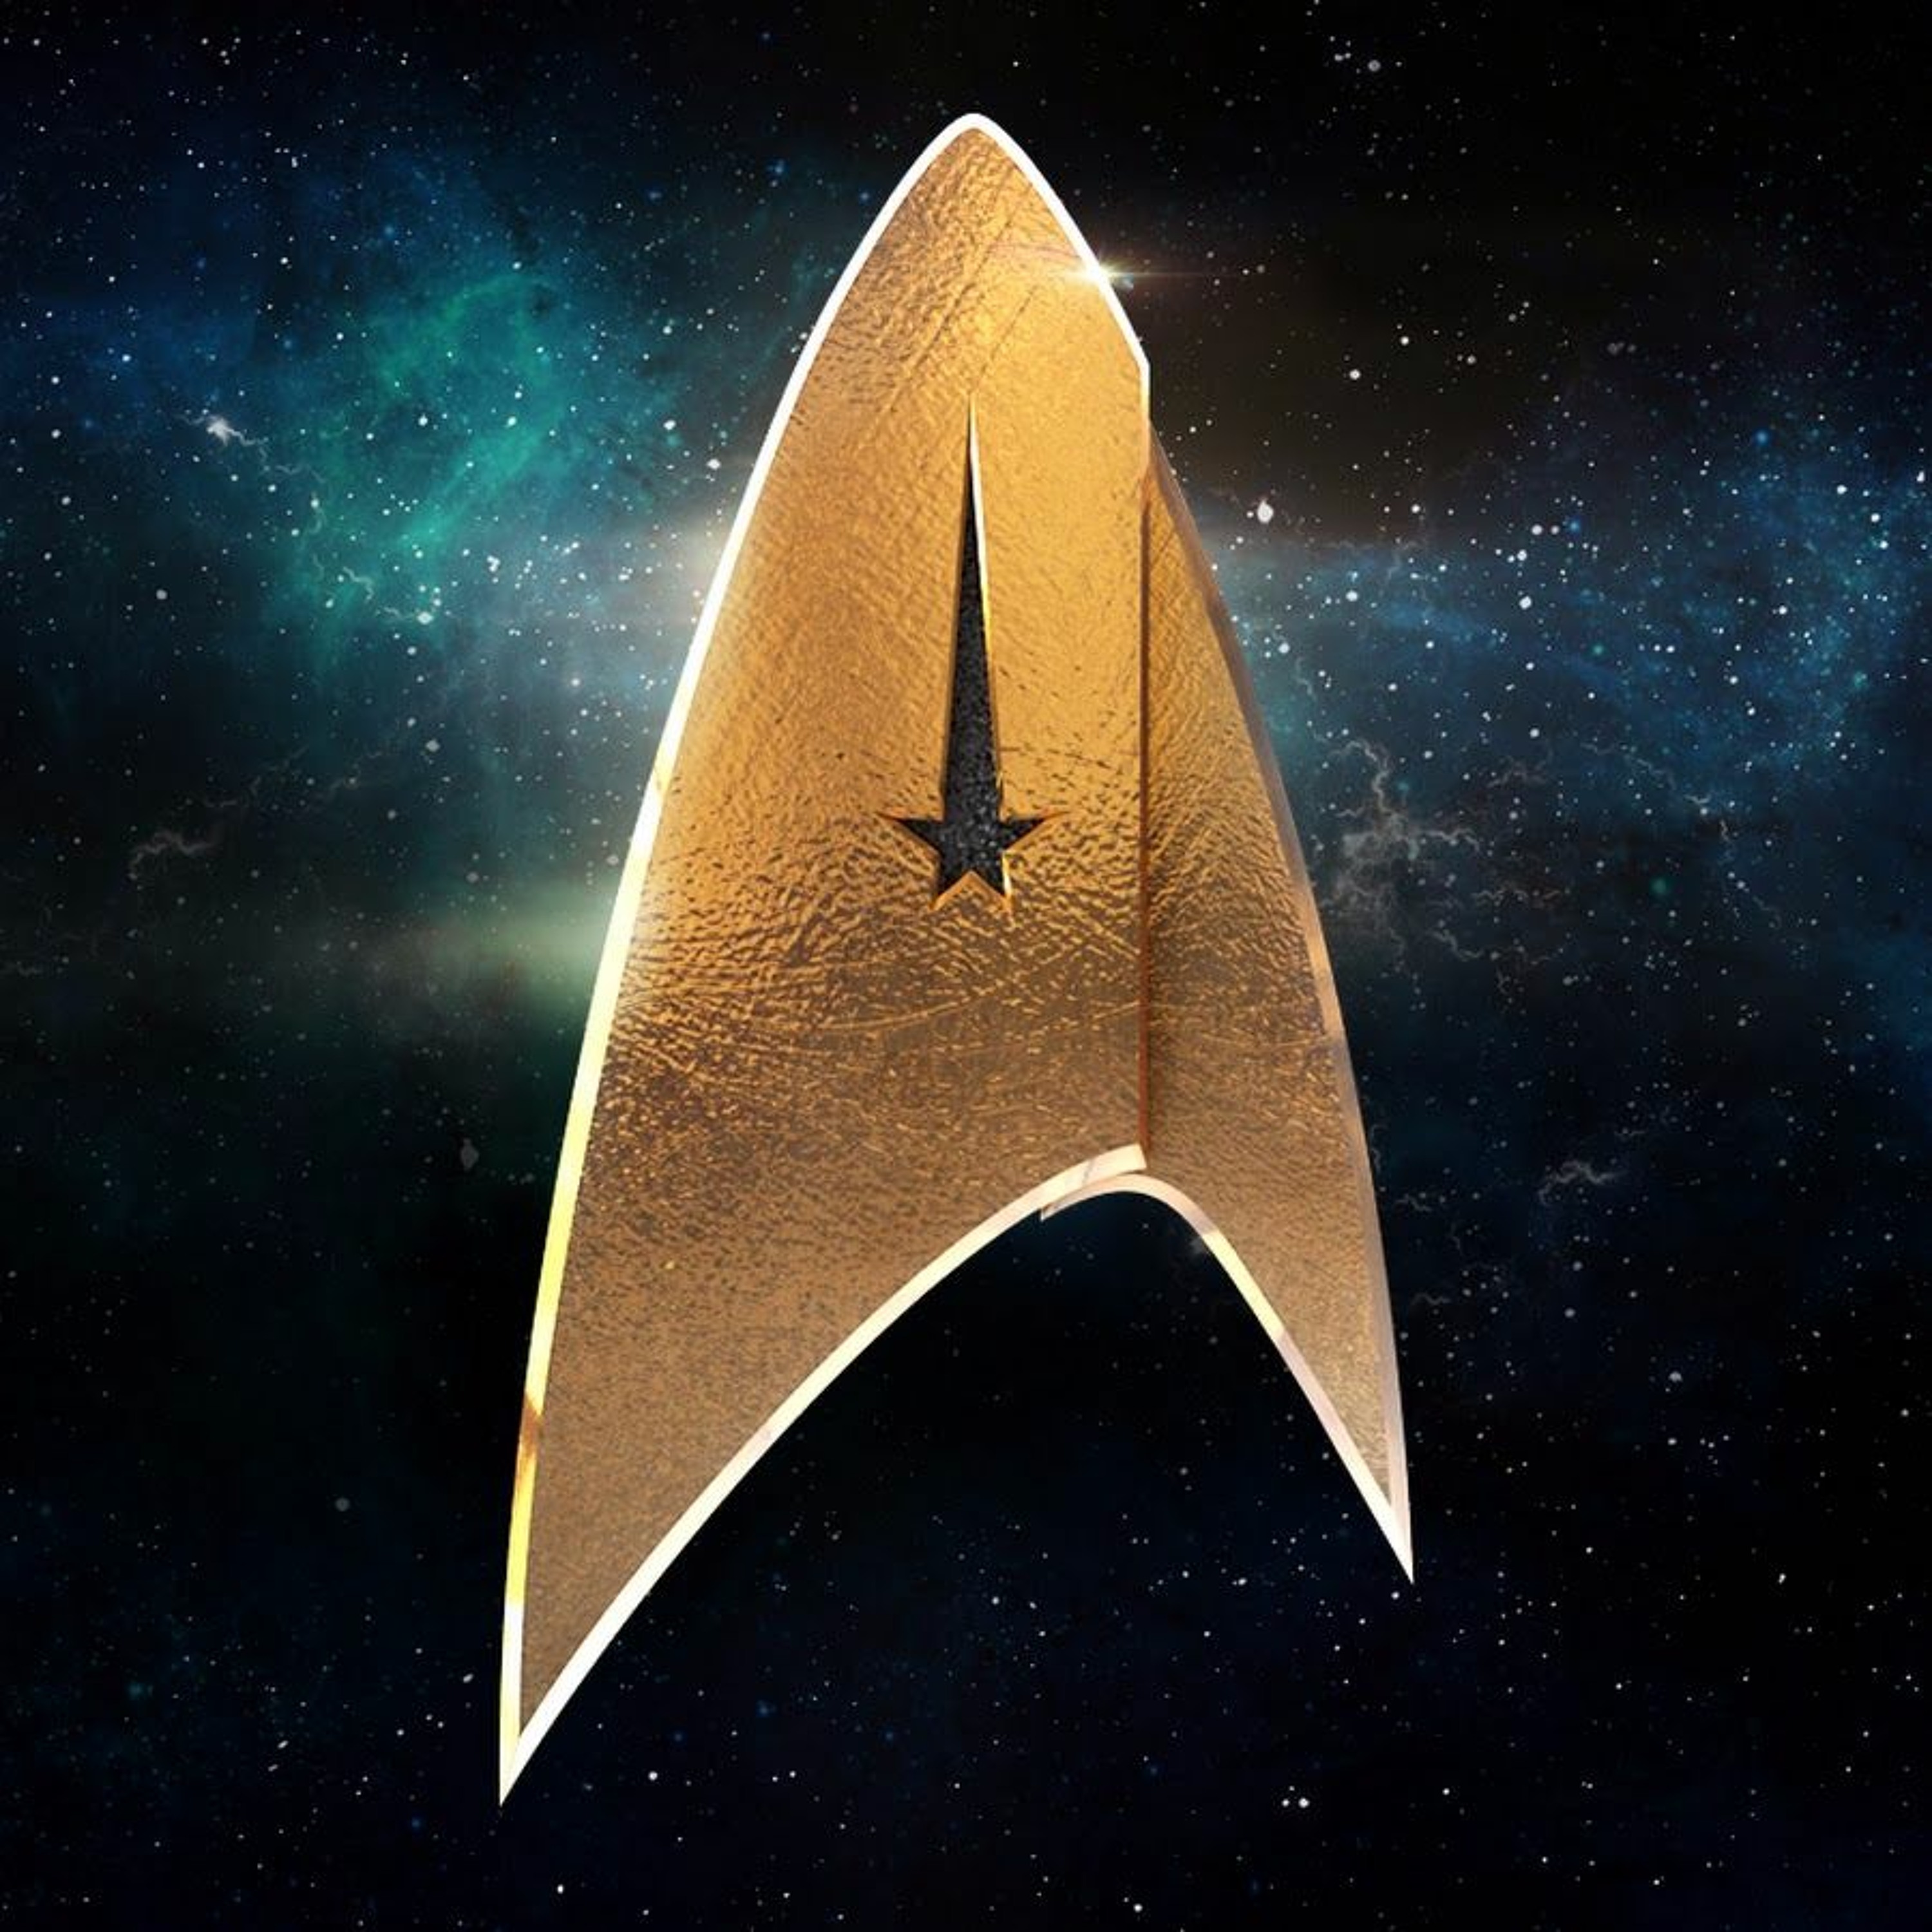 Star Trek ~ Are you a logical Vulcan or an emotional human? Men's psychology through Star Trek